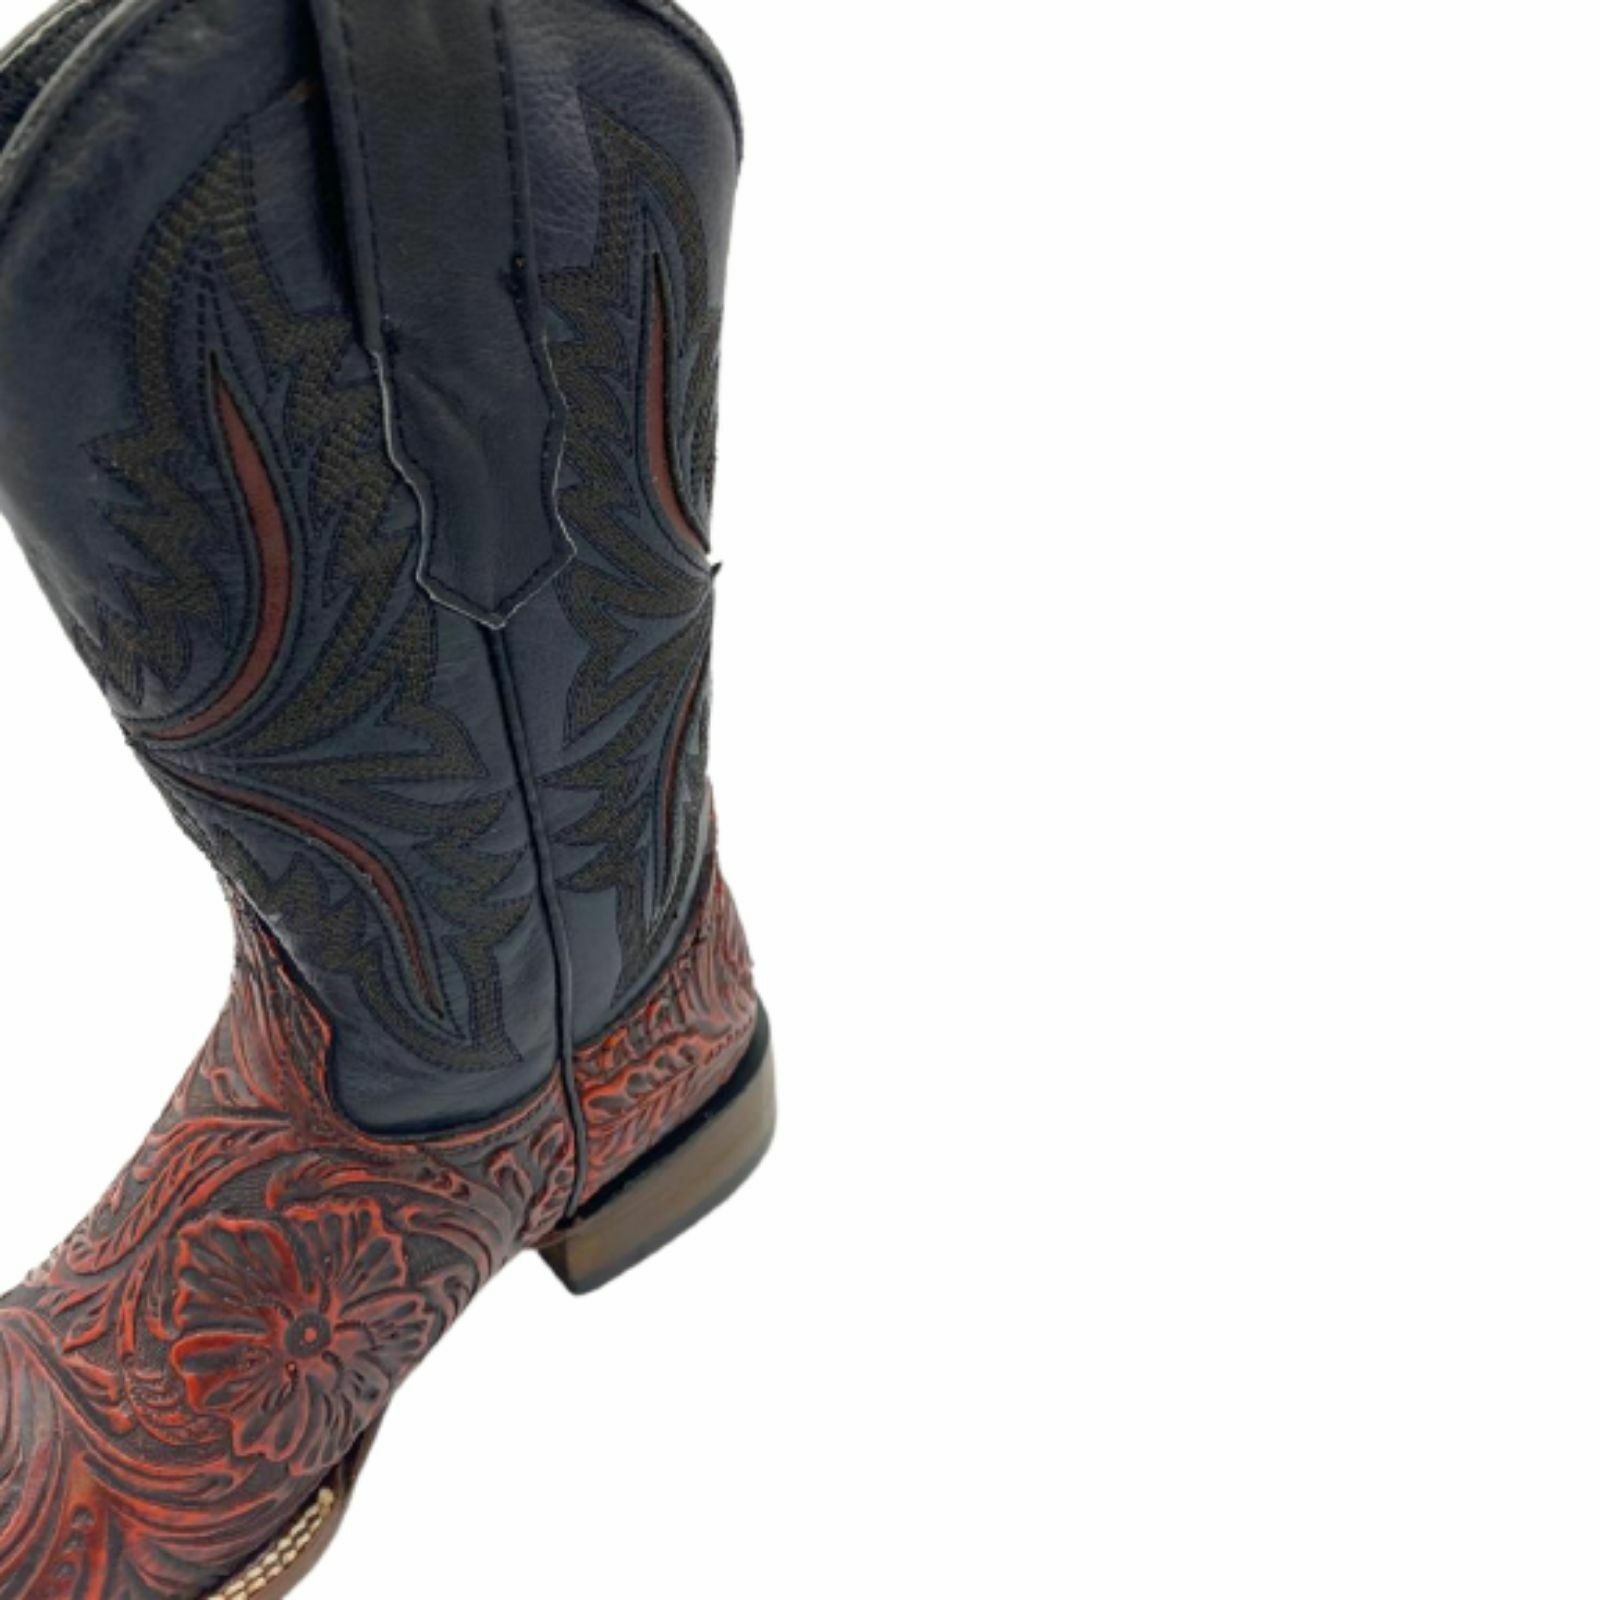 Handtooled Aztec calendar boots  Boots, Western boots, Mens belts